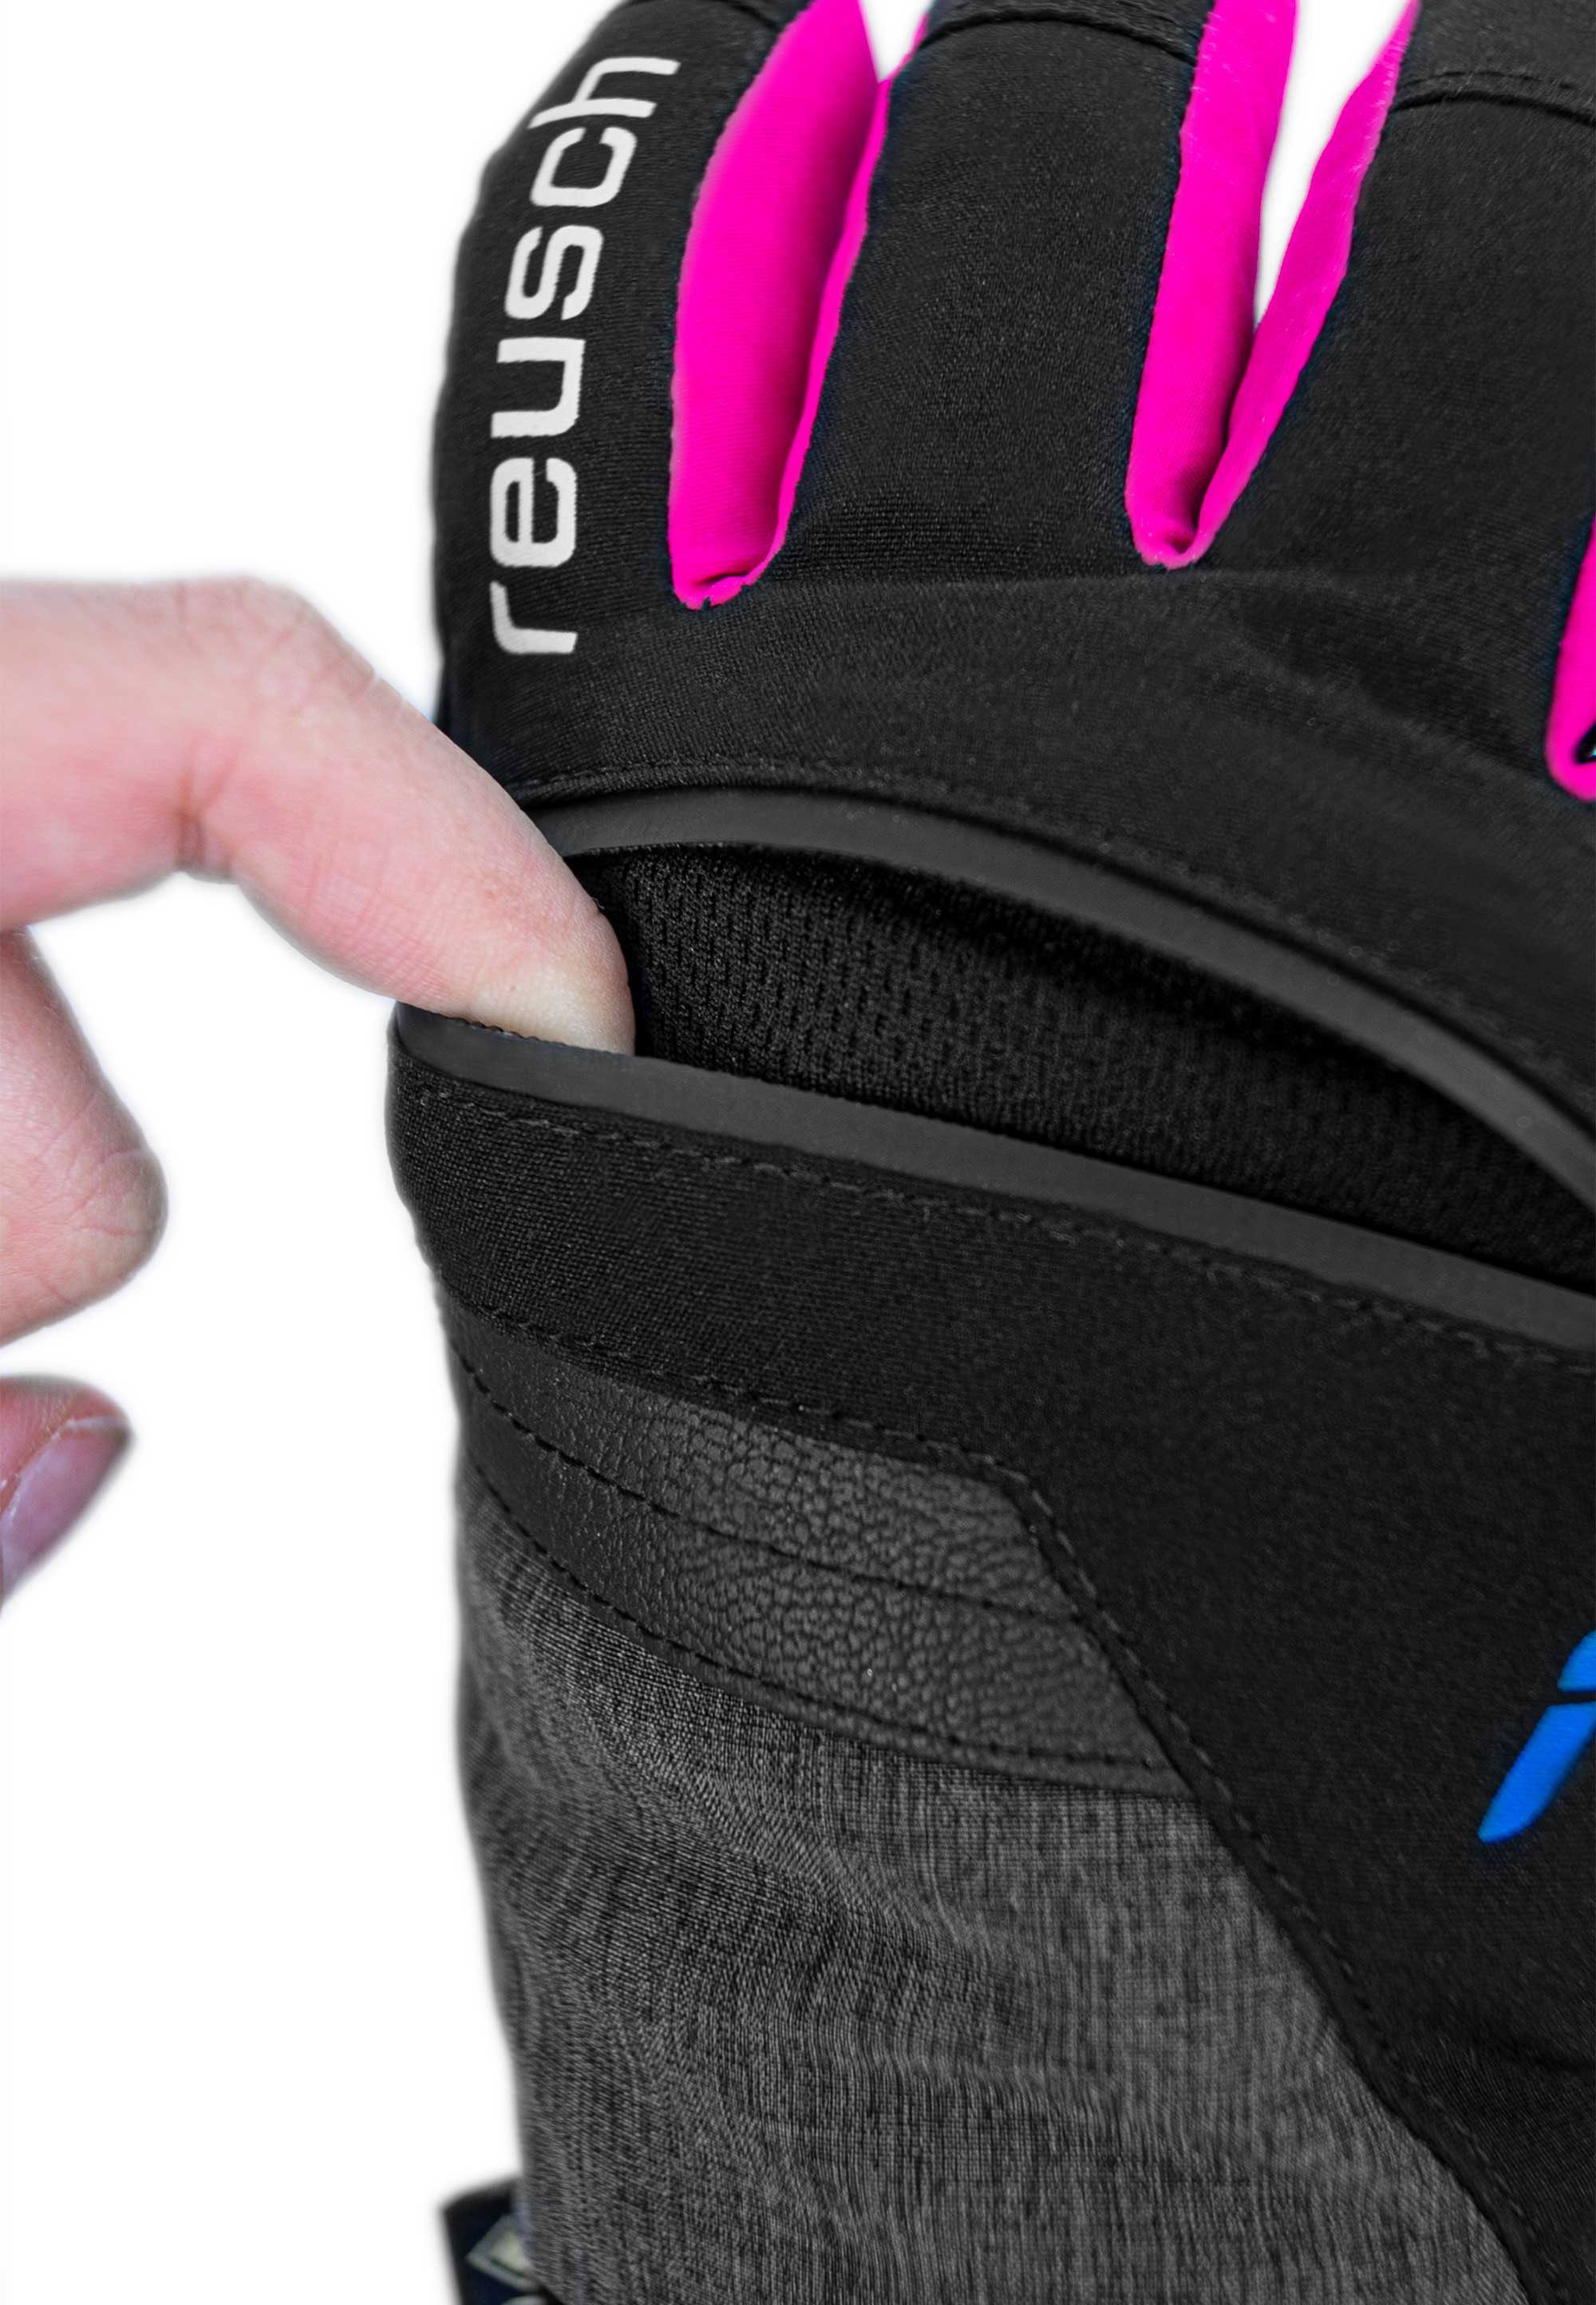 GORE-TEX pink-schwarz in sportlichem Skihandschuhe Junior Design Reusch Travis